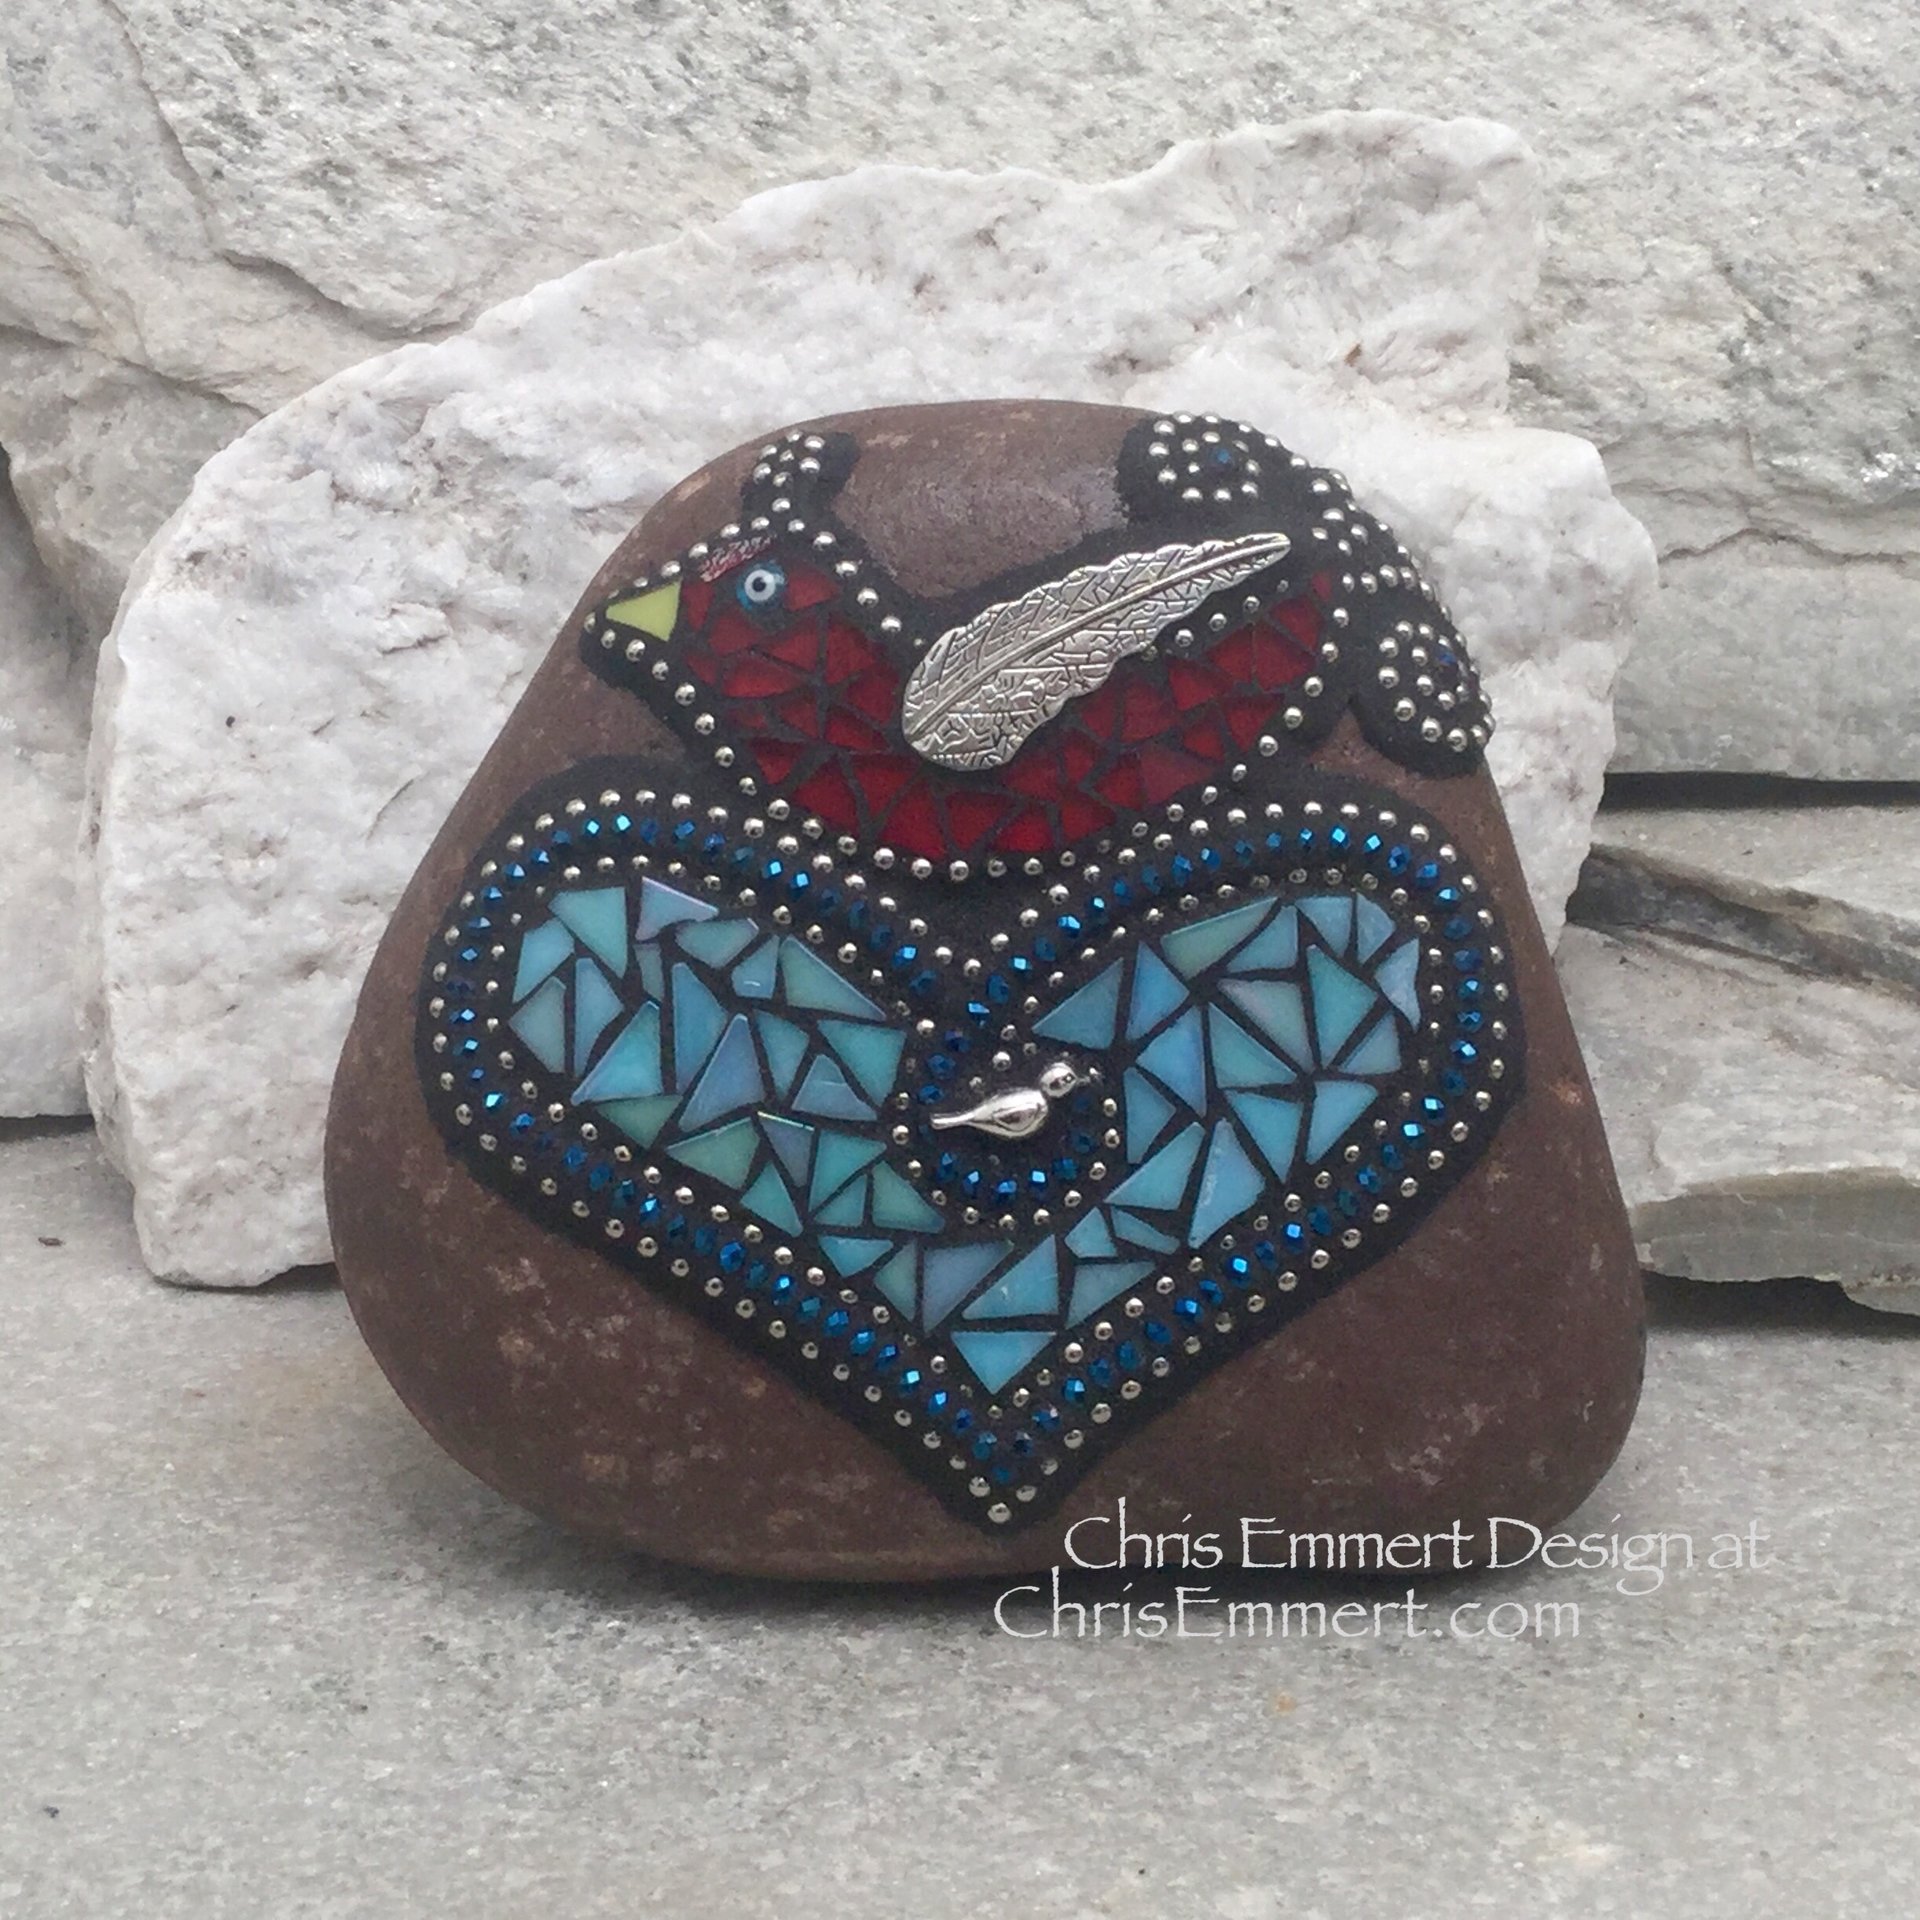 RedBird on a Blue Heart Mosaic -Garden Stone